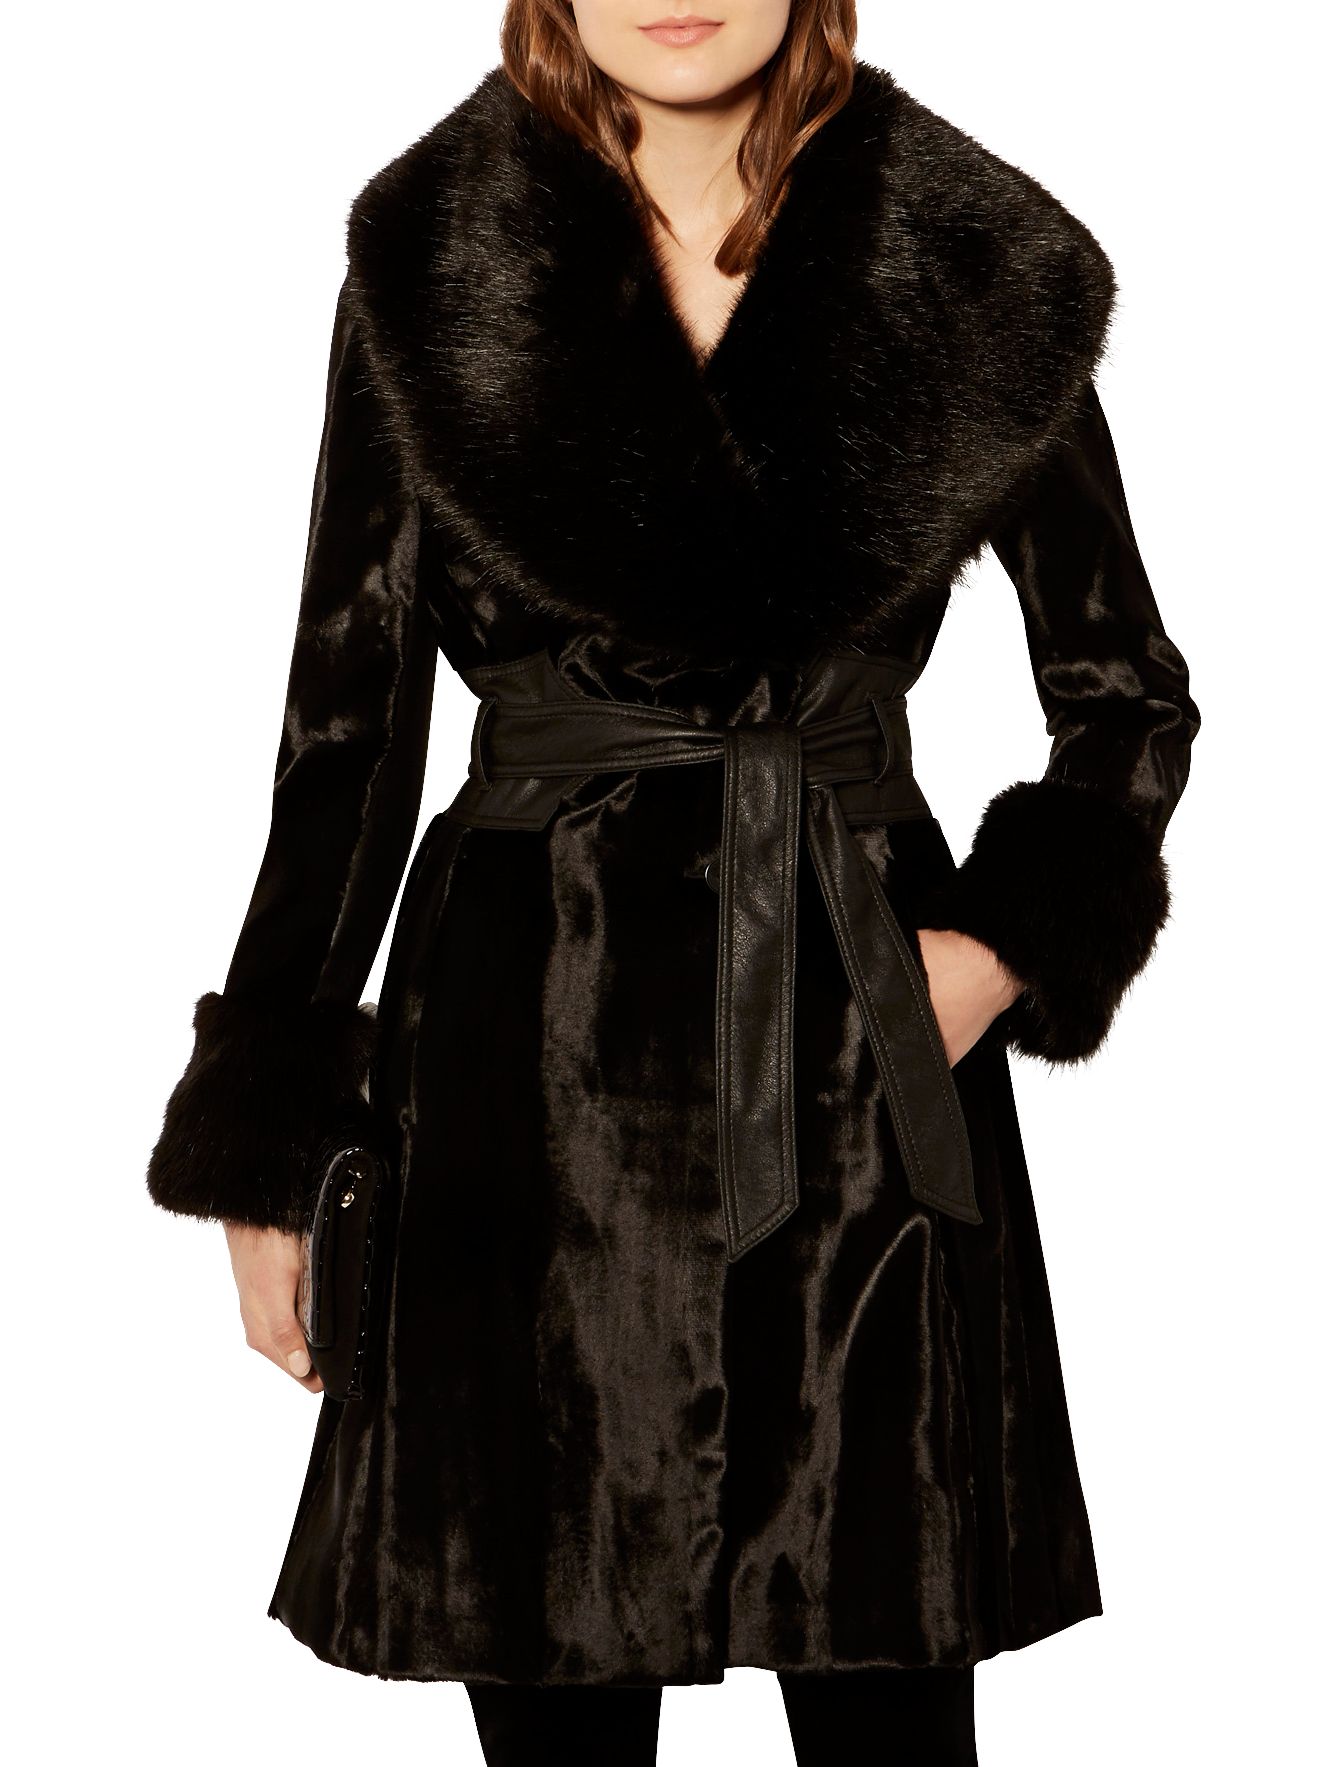 Karen Millen Pony Coat, Black at John Lewis & Partners